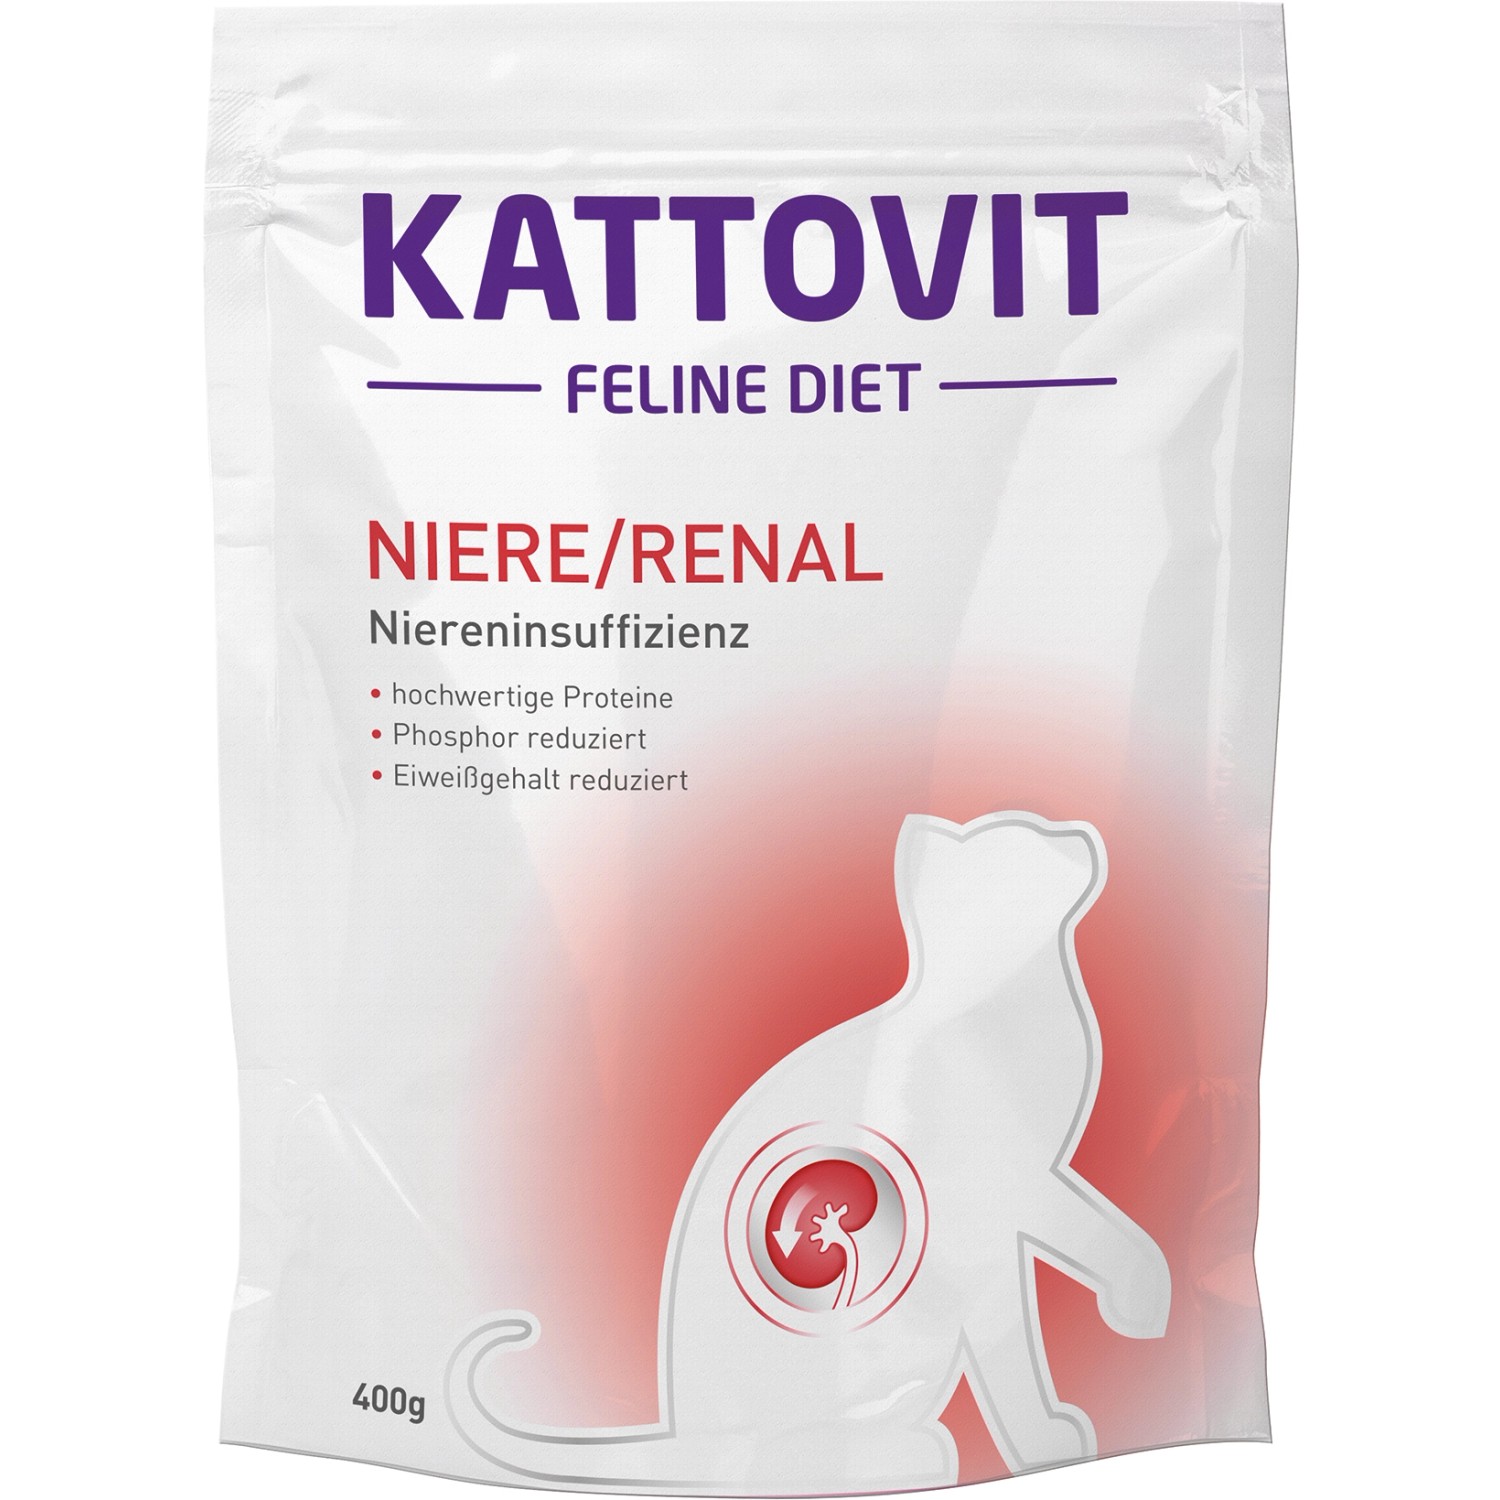 Kattovit Spezialfutter für Katzen Niere/Renal 400 g